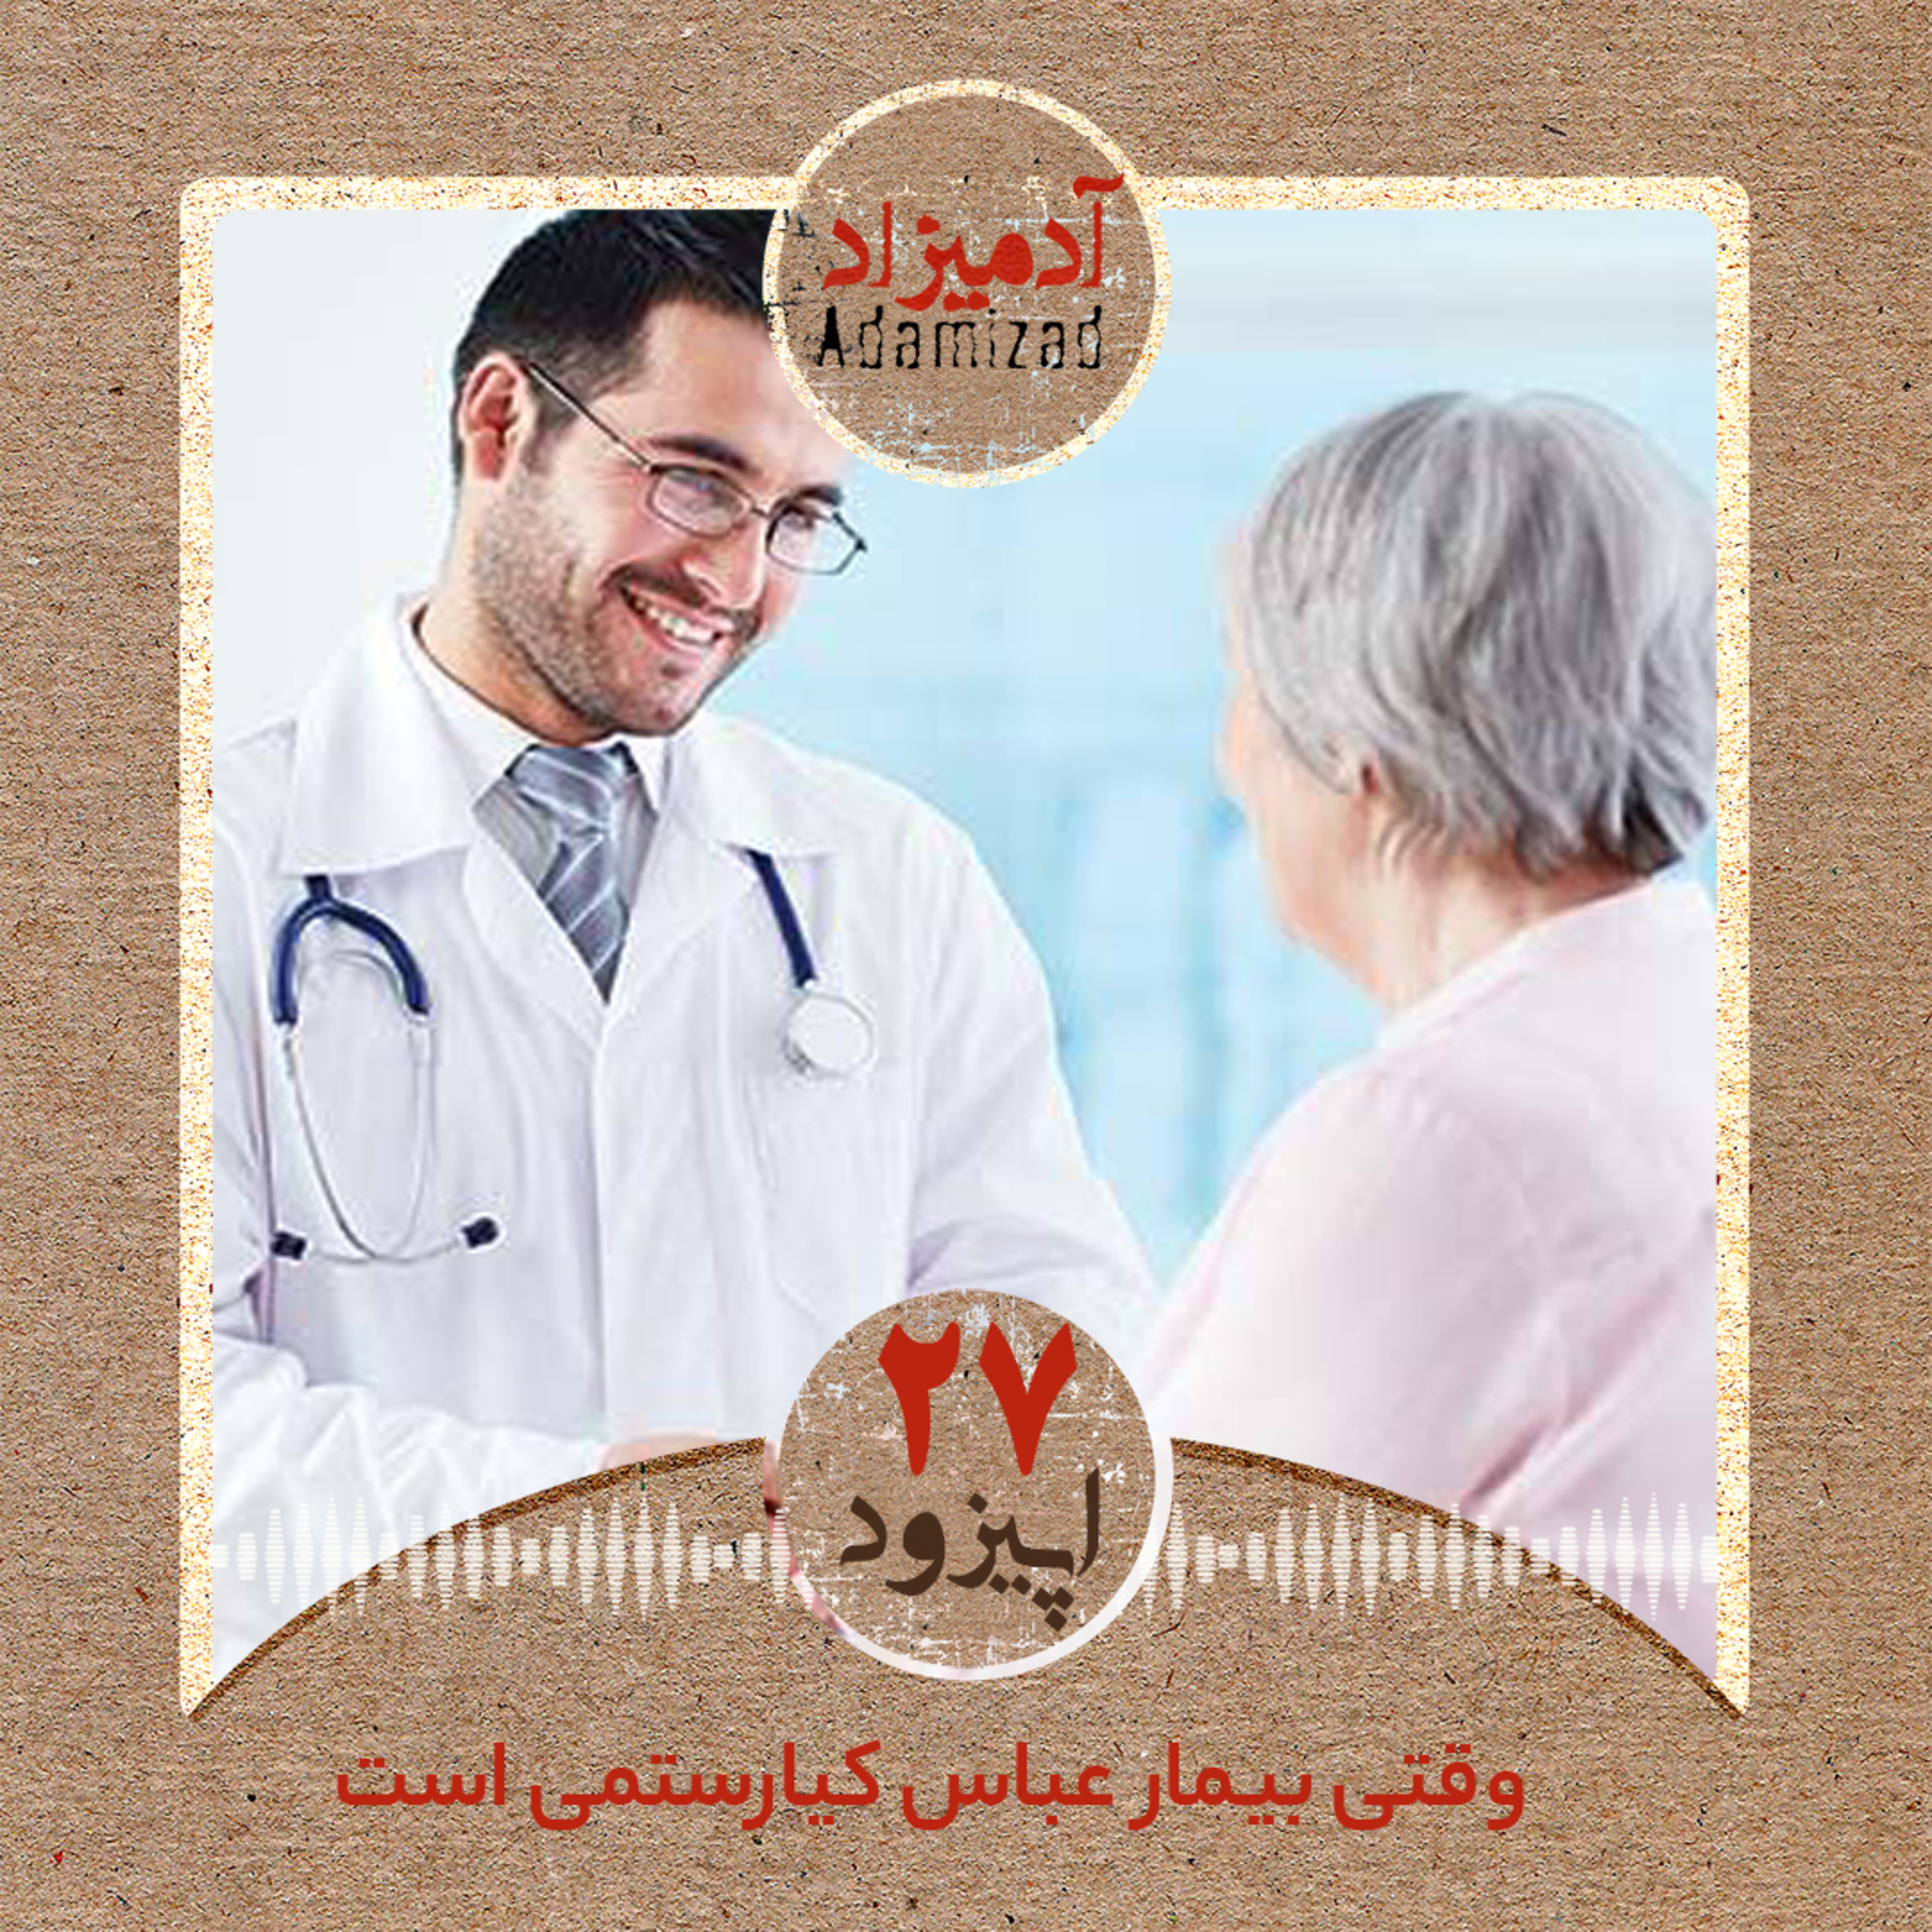 اپیزود27:وقتی بیمار، عباس کیارستمی است – گفتگویی با دکتر بهزاد لطیفیان